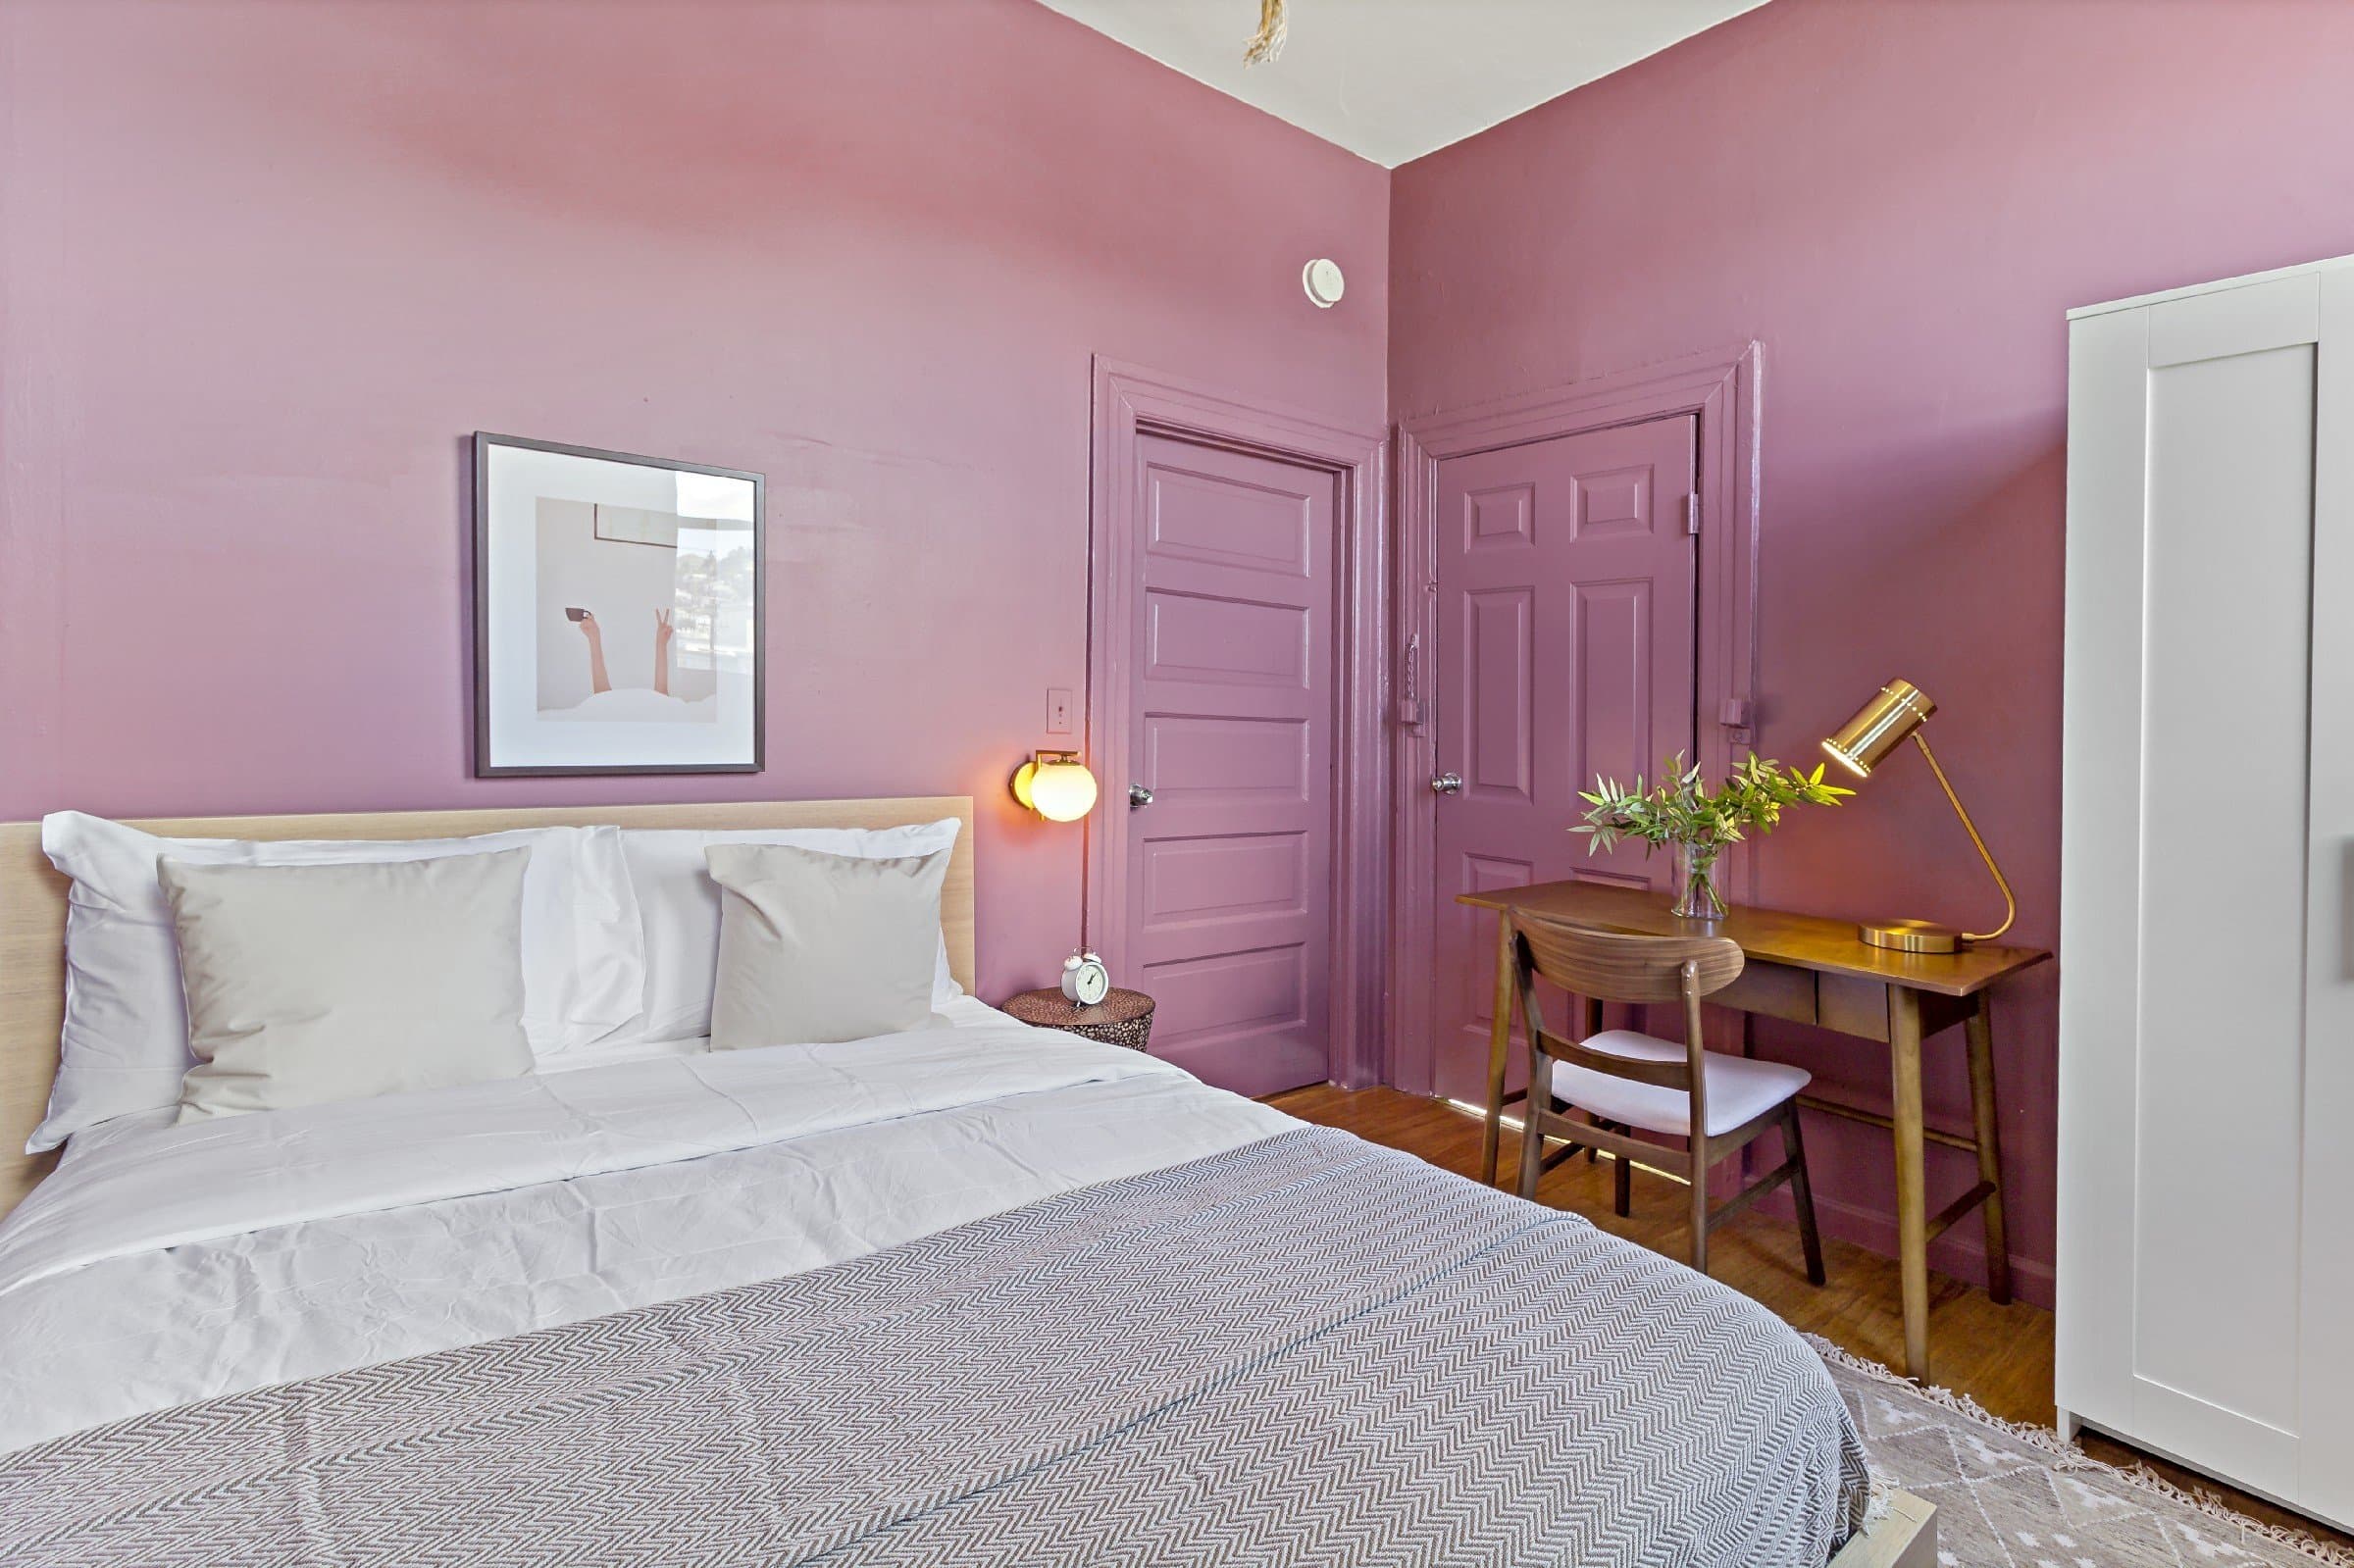 Photo 14 of #903: Queen Bedroom C at June Homes